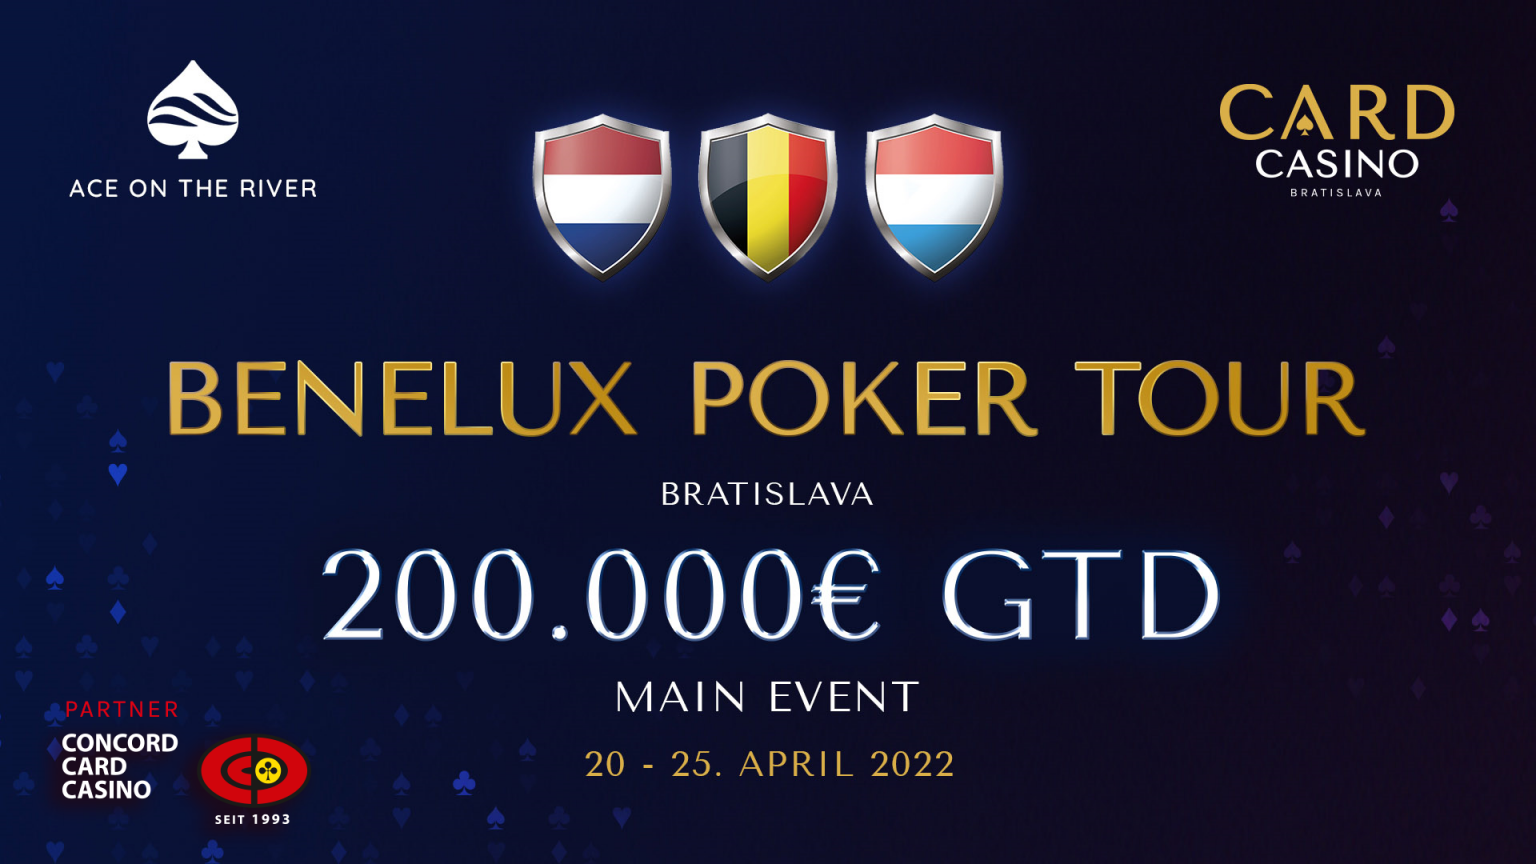 Card Casino Bratislava lädt zur BENELUX Poker Tour mit €200.000 GTD Main Event